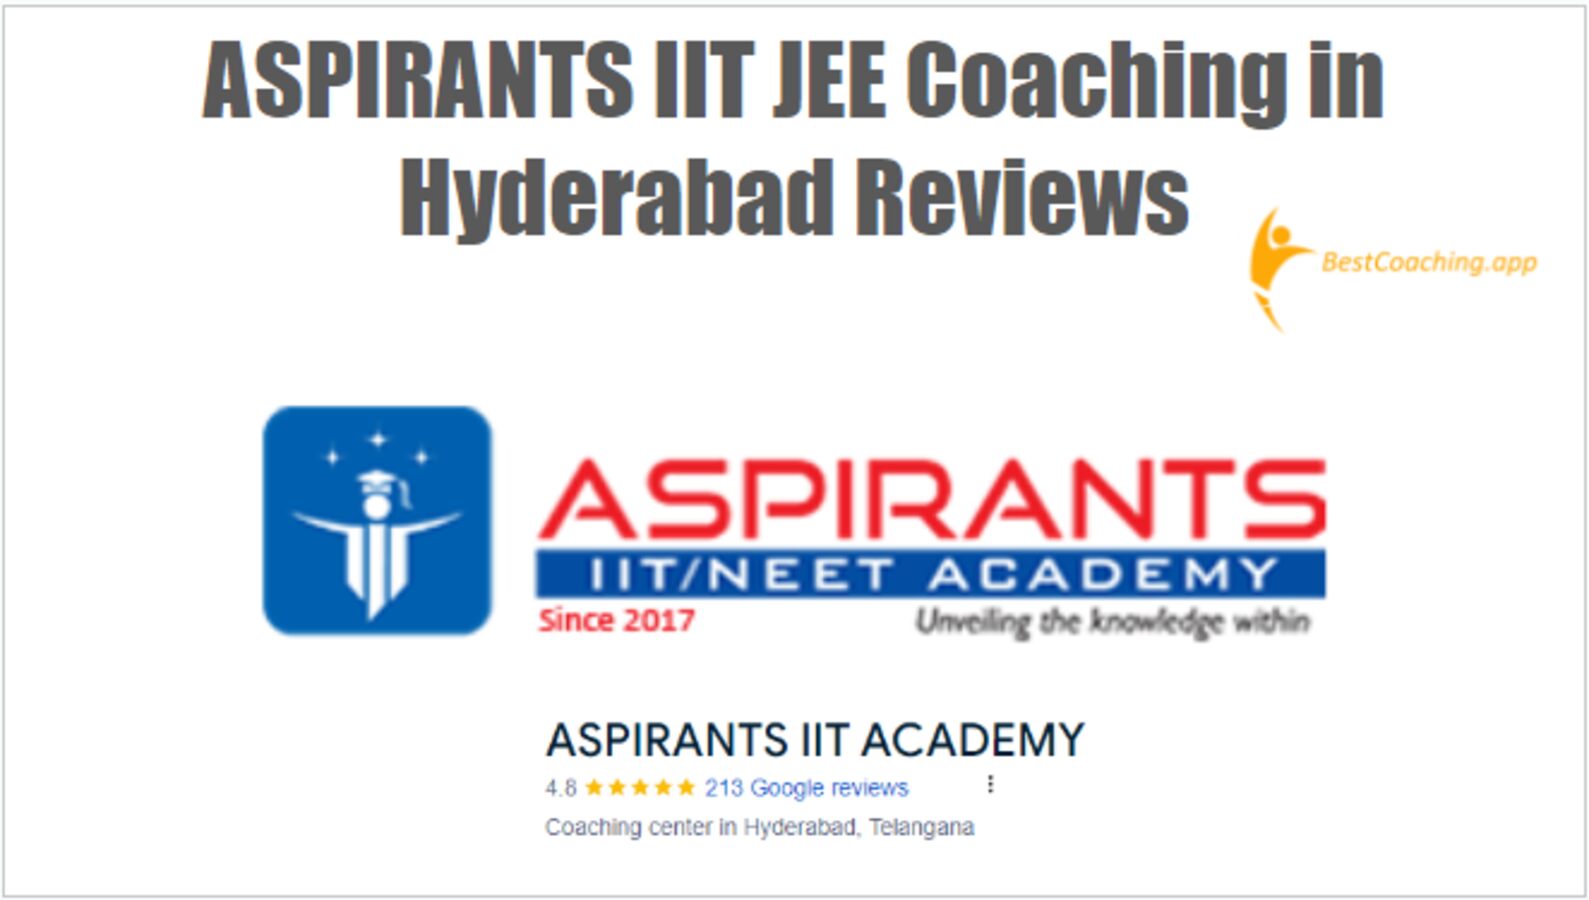 ASPIRANTS IIT JEE Coaching in Hyderabad Reviews